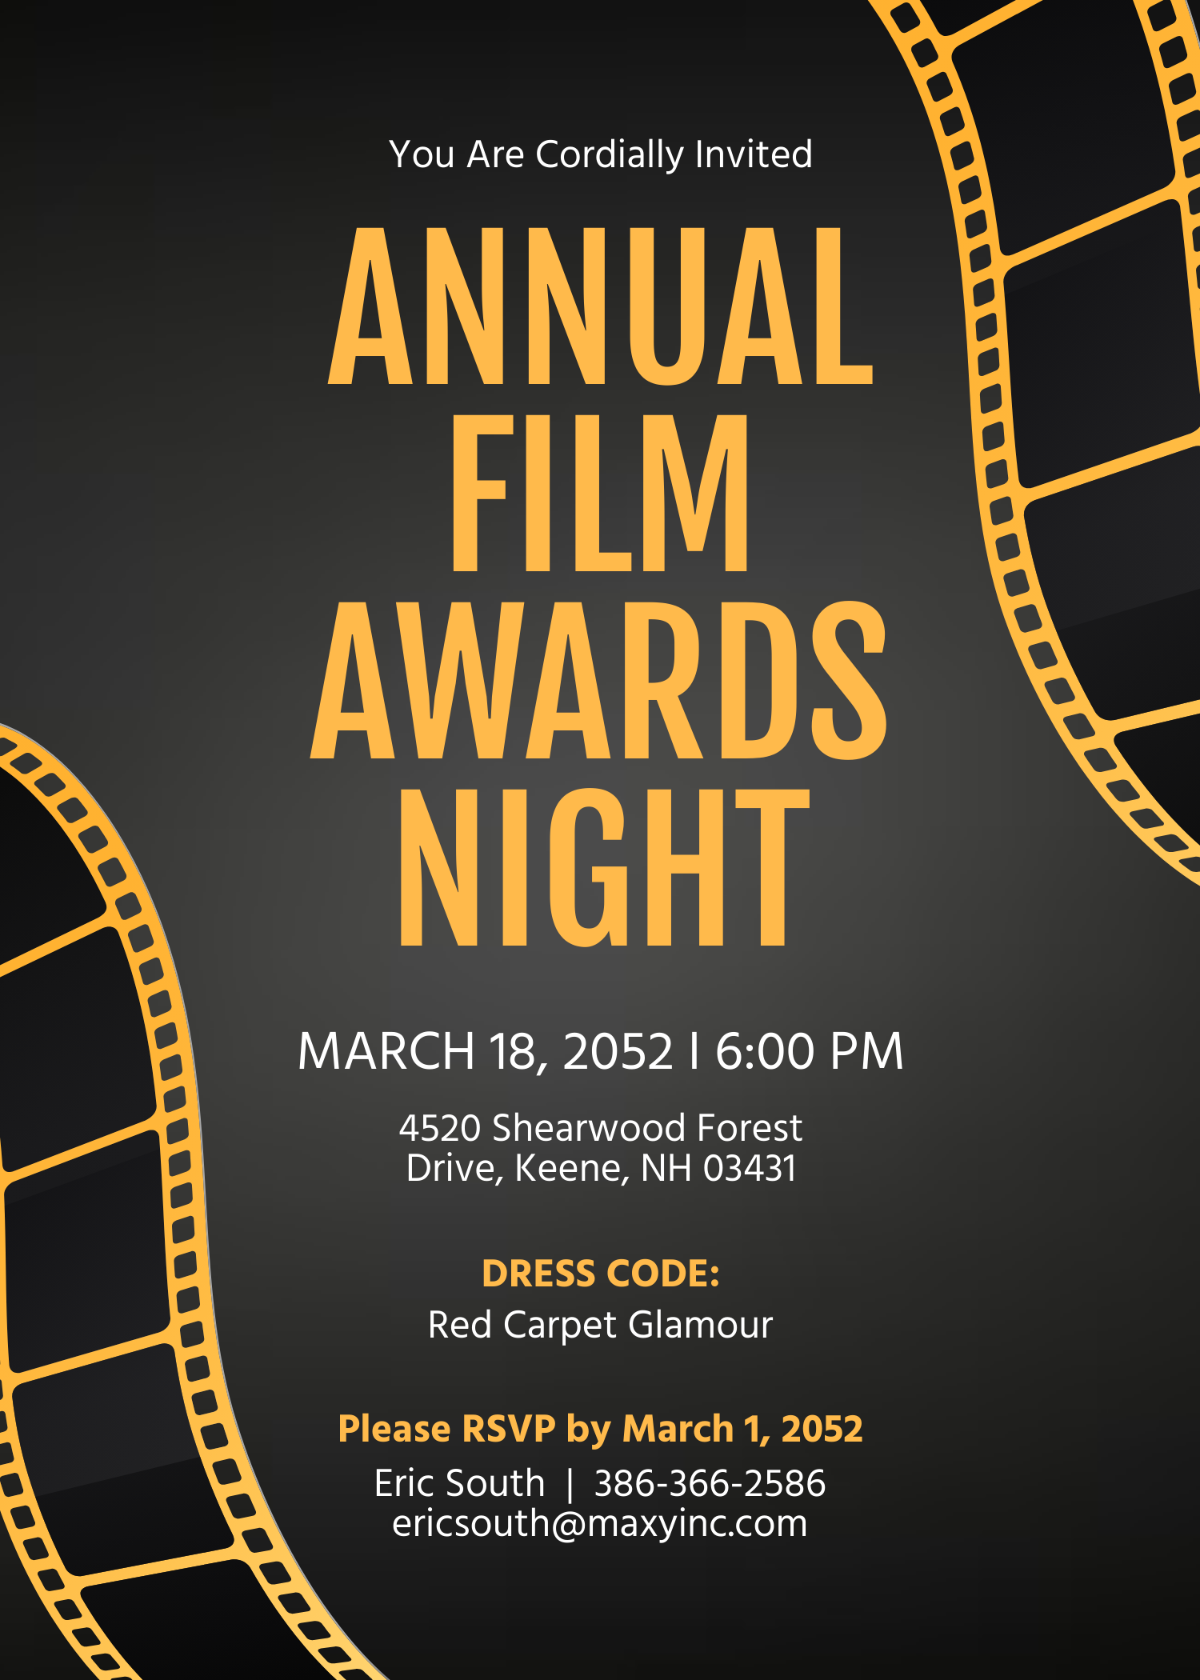 Film Awards Night Invitation